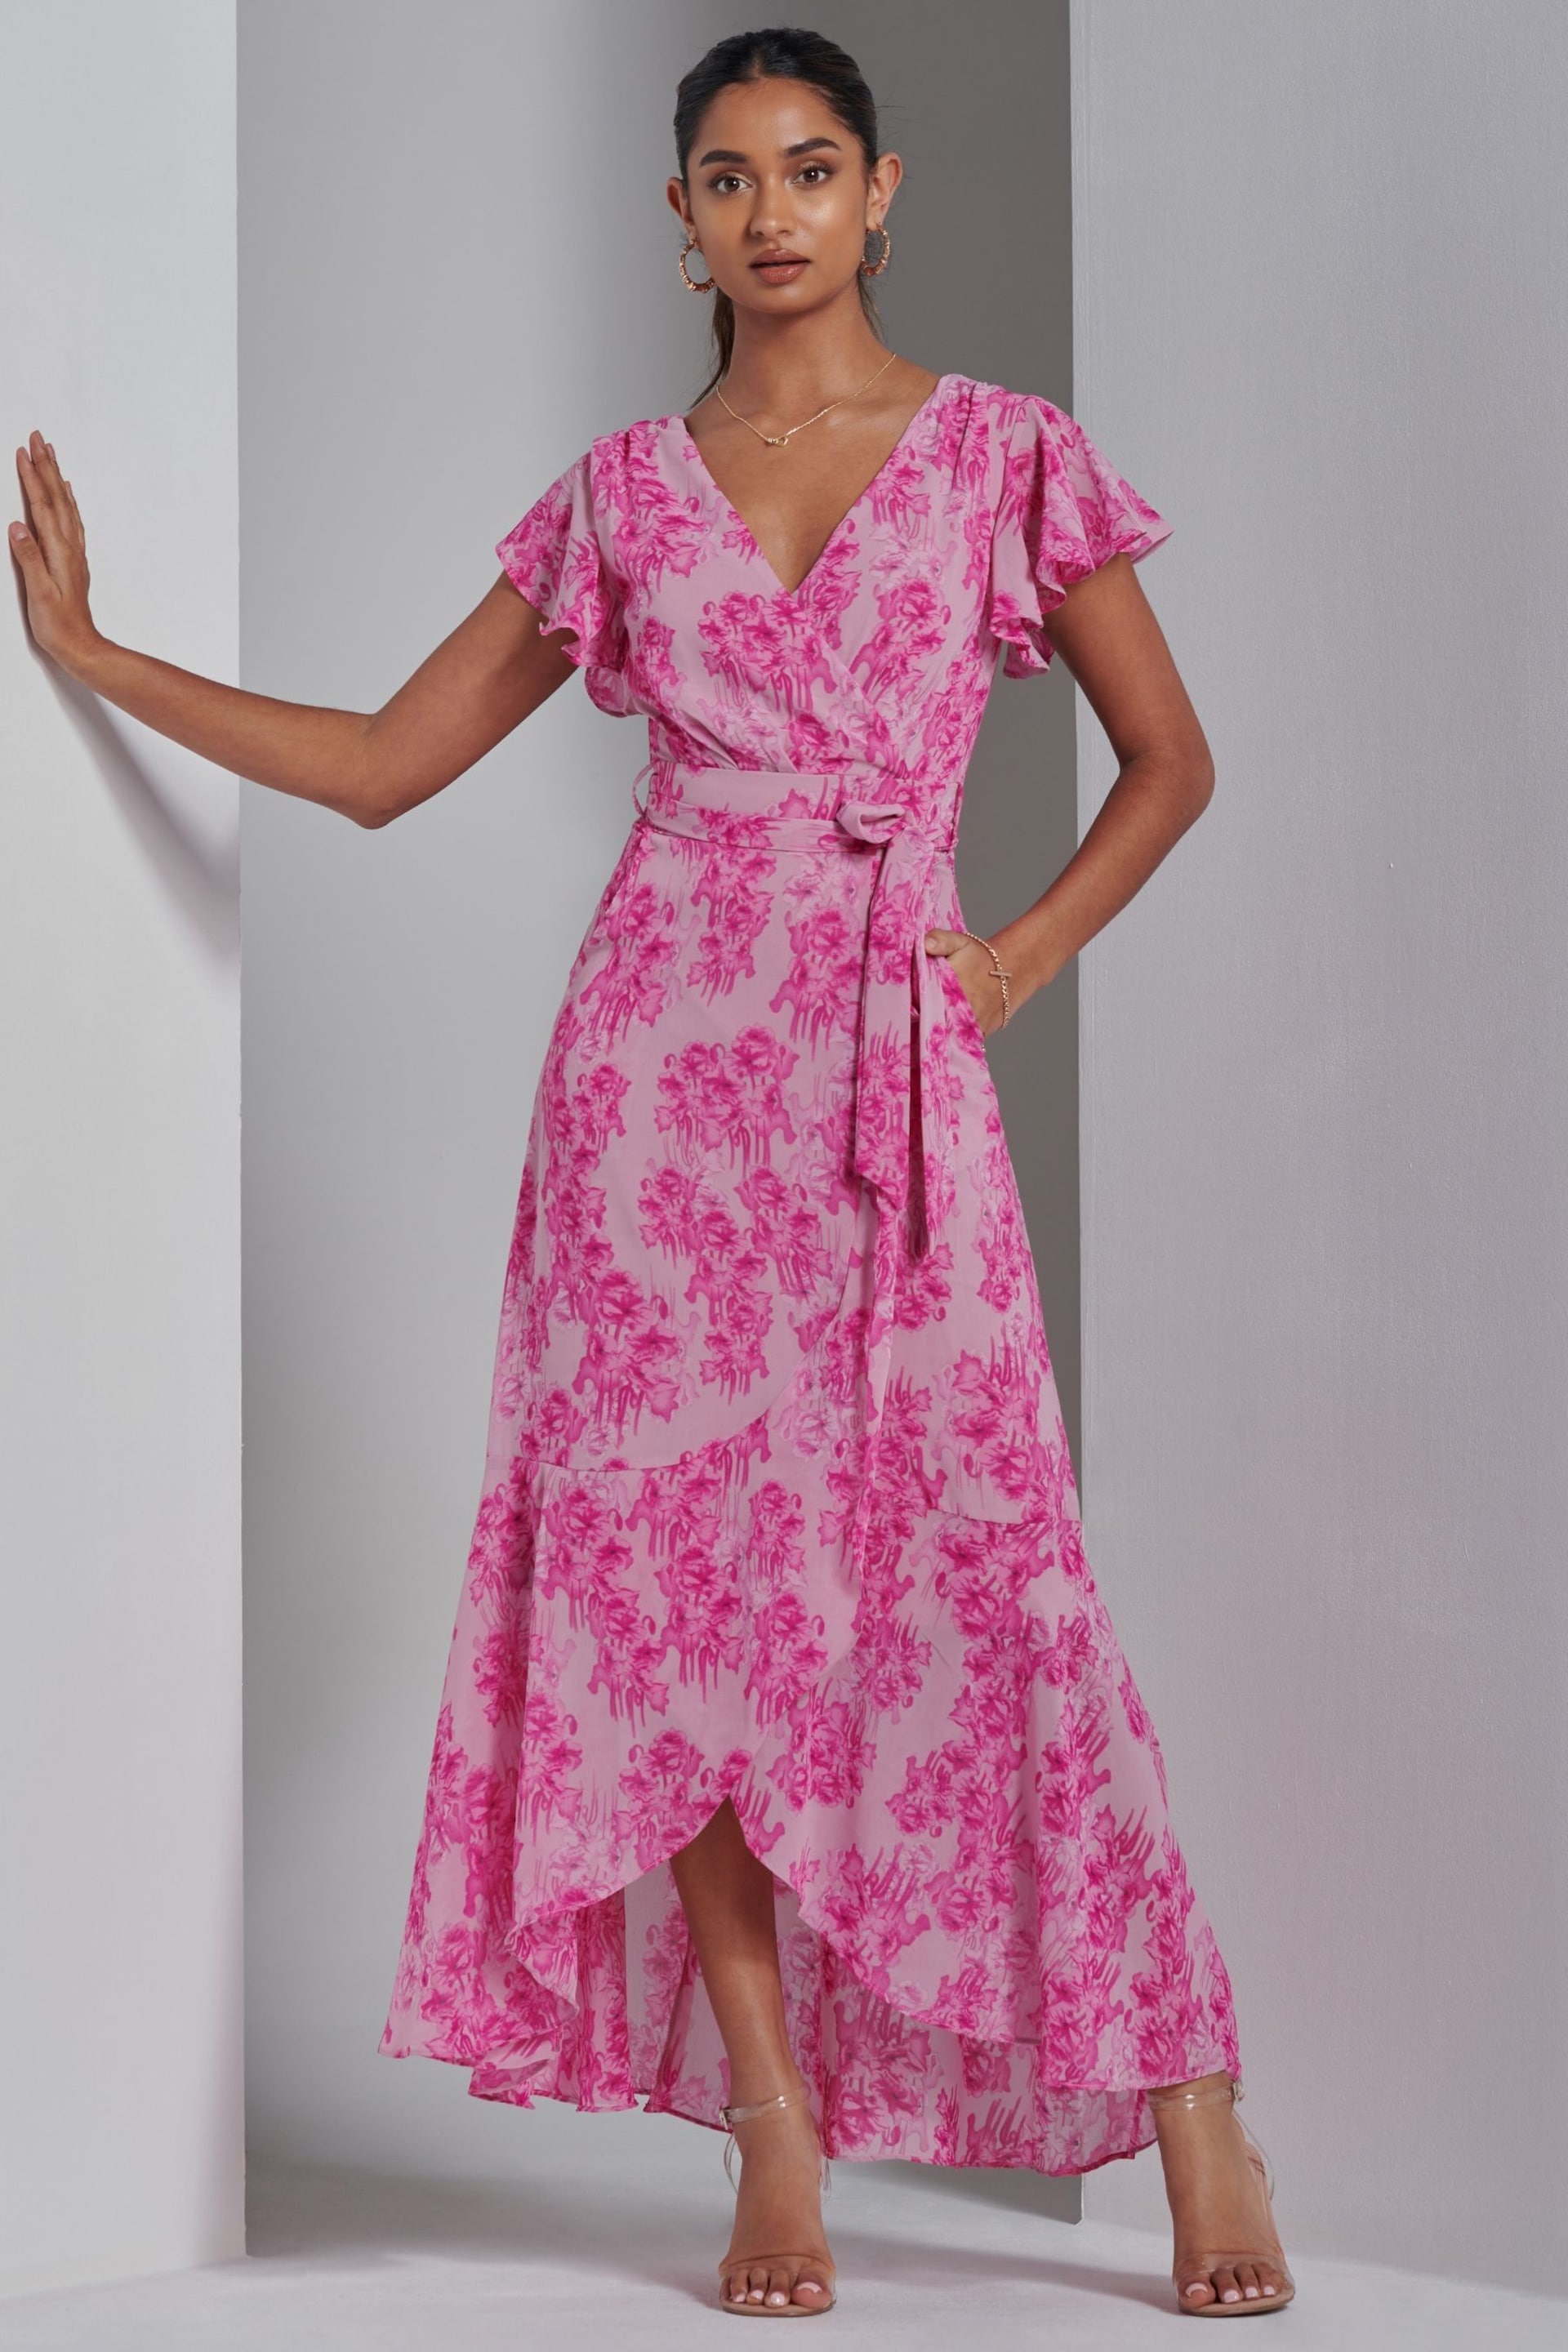 Jolie Moi Pink Haylie Frill Chiffon Maxi Dress - Image 1 of 6